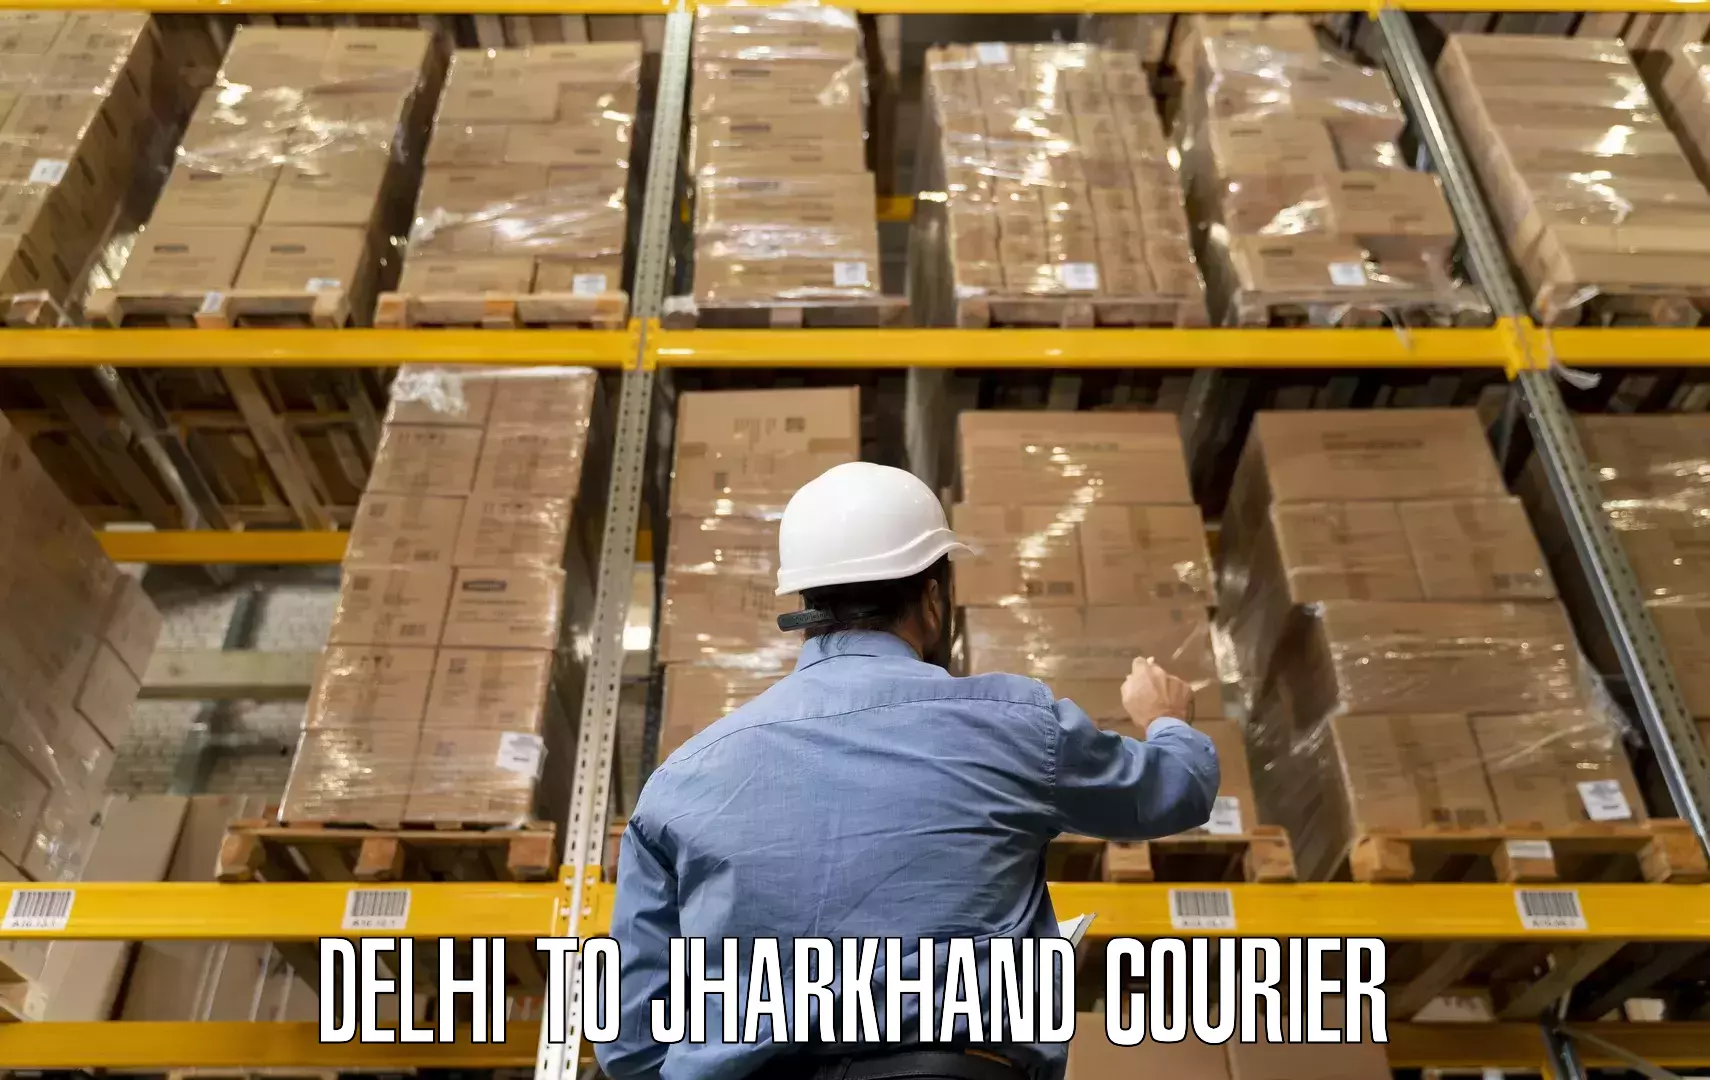 Quality moving company Delhi to IIT Dhanbad